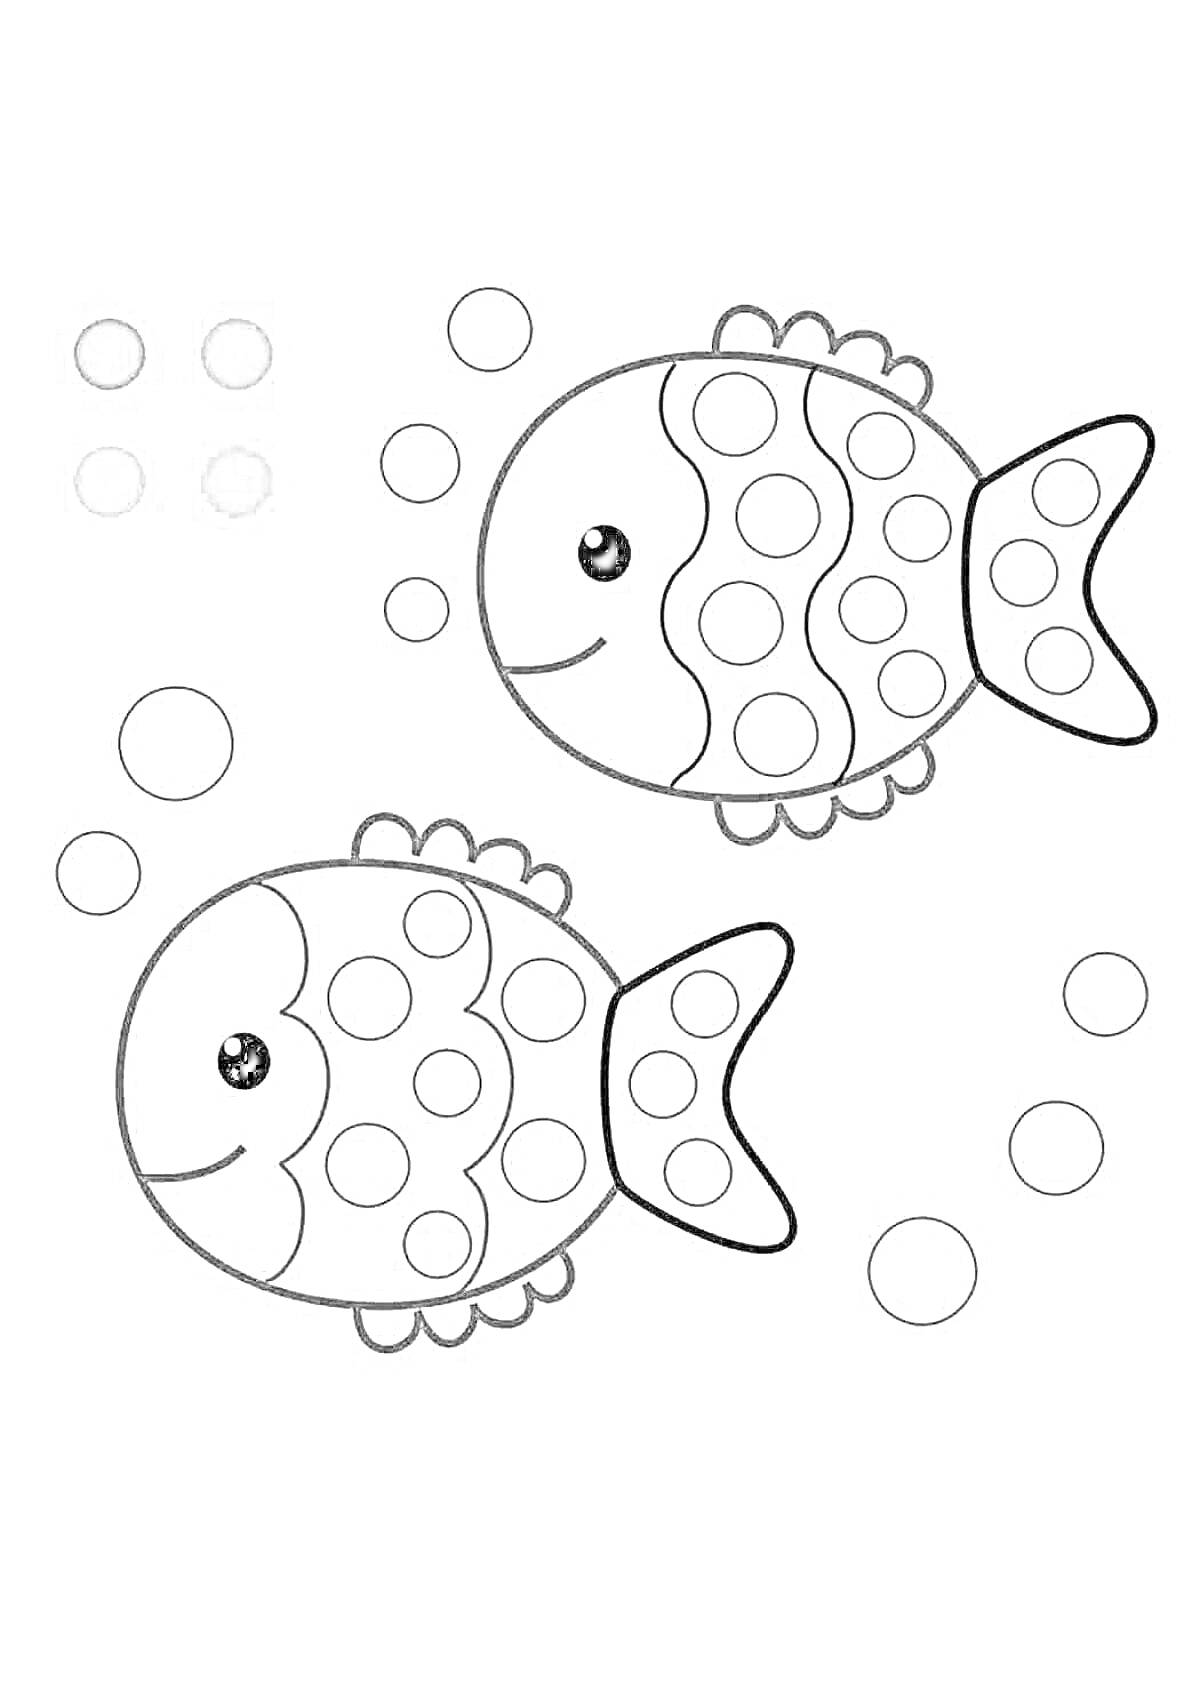 Раскраска Шаблон раскраски с двумя рыбками и пузырьками для заполнения пластилином